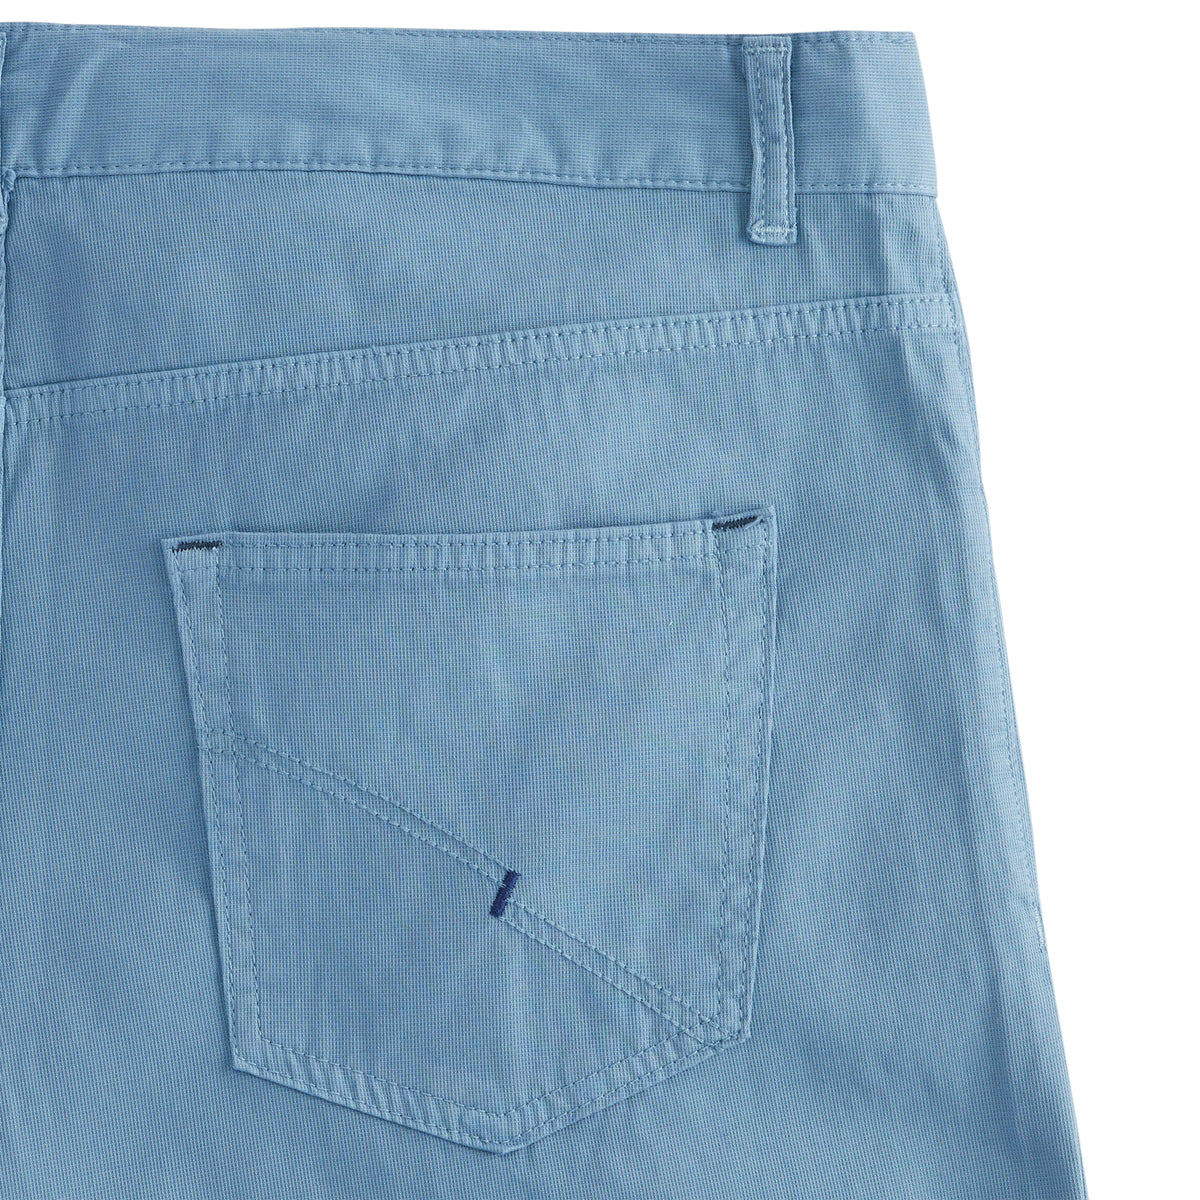 Pocket Sportswear – 5 Jean Model Gionfriddo